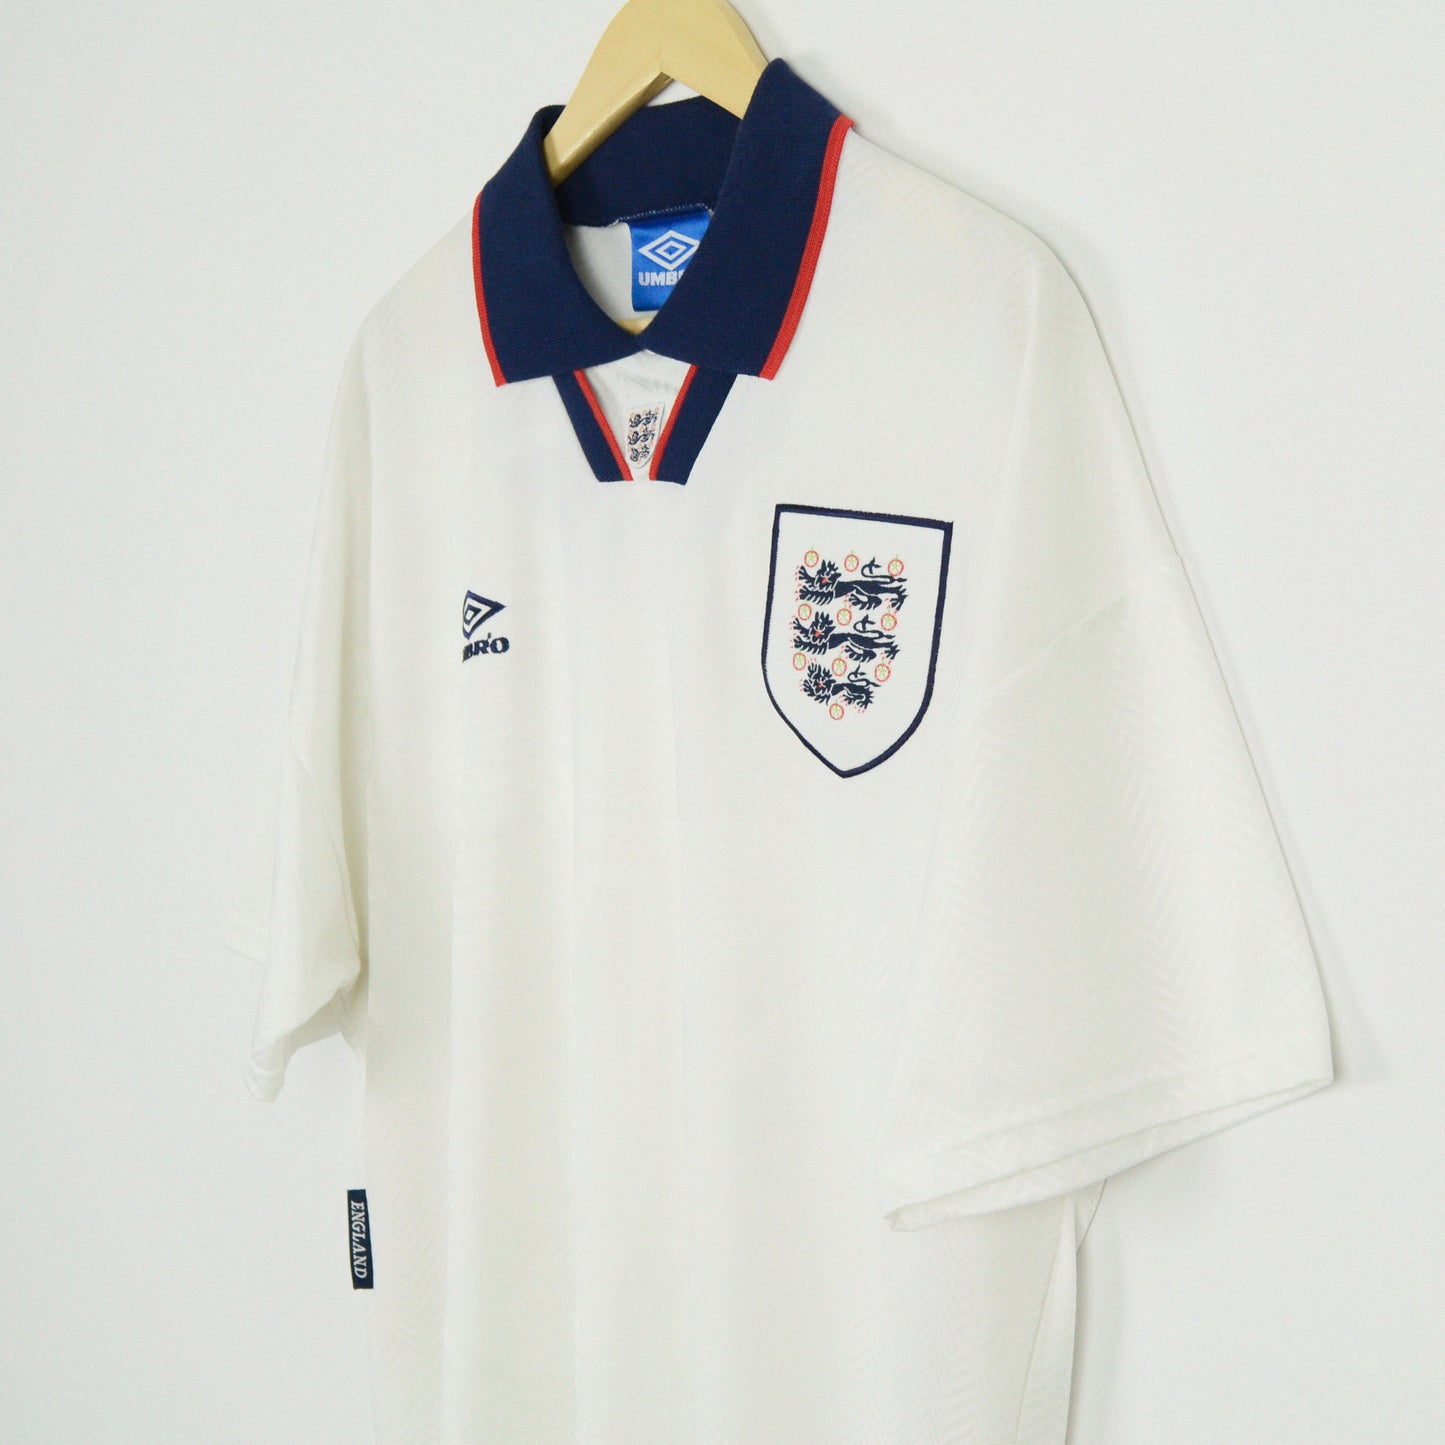 1993-95 Umbro England Home Shirt L